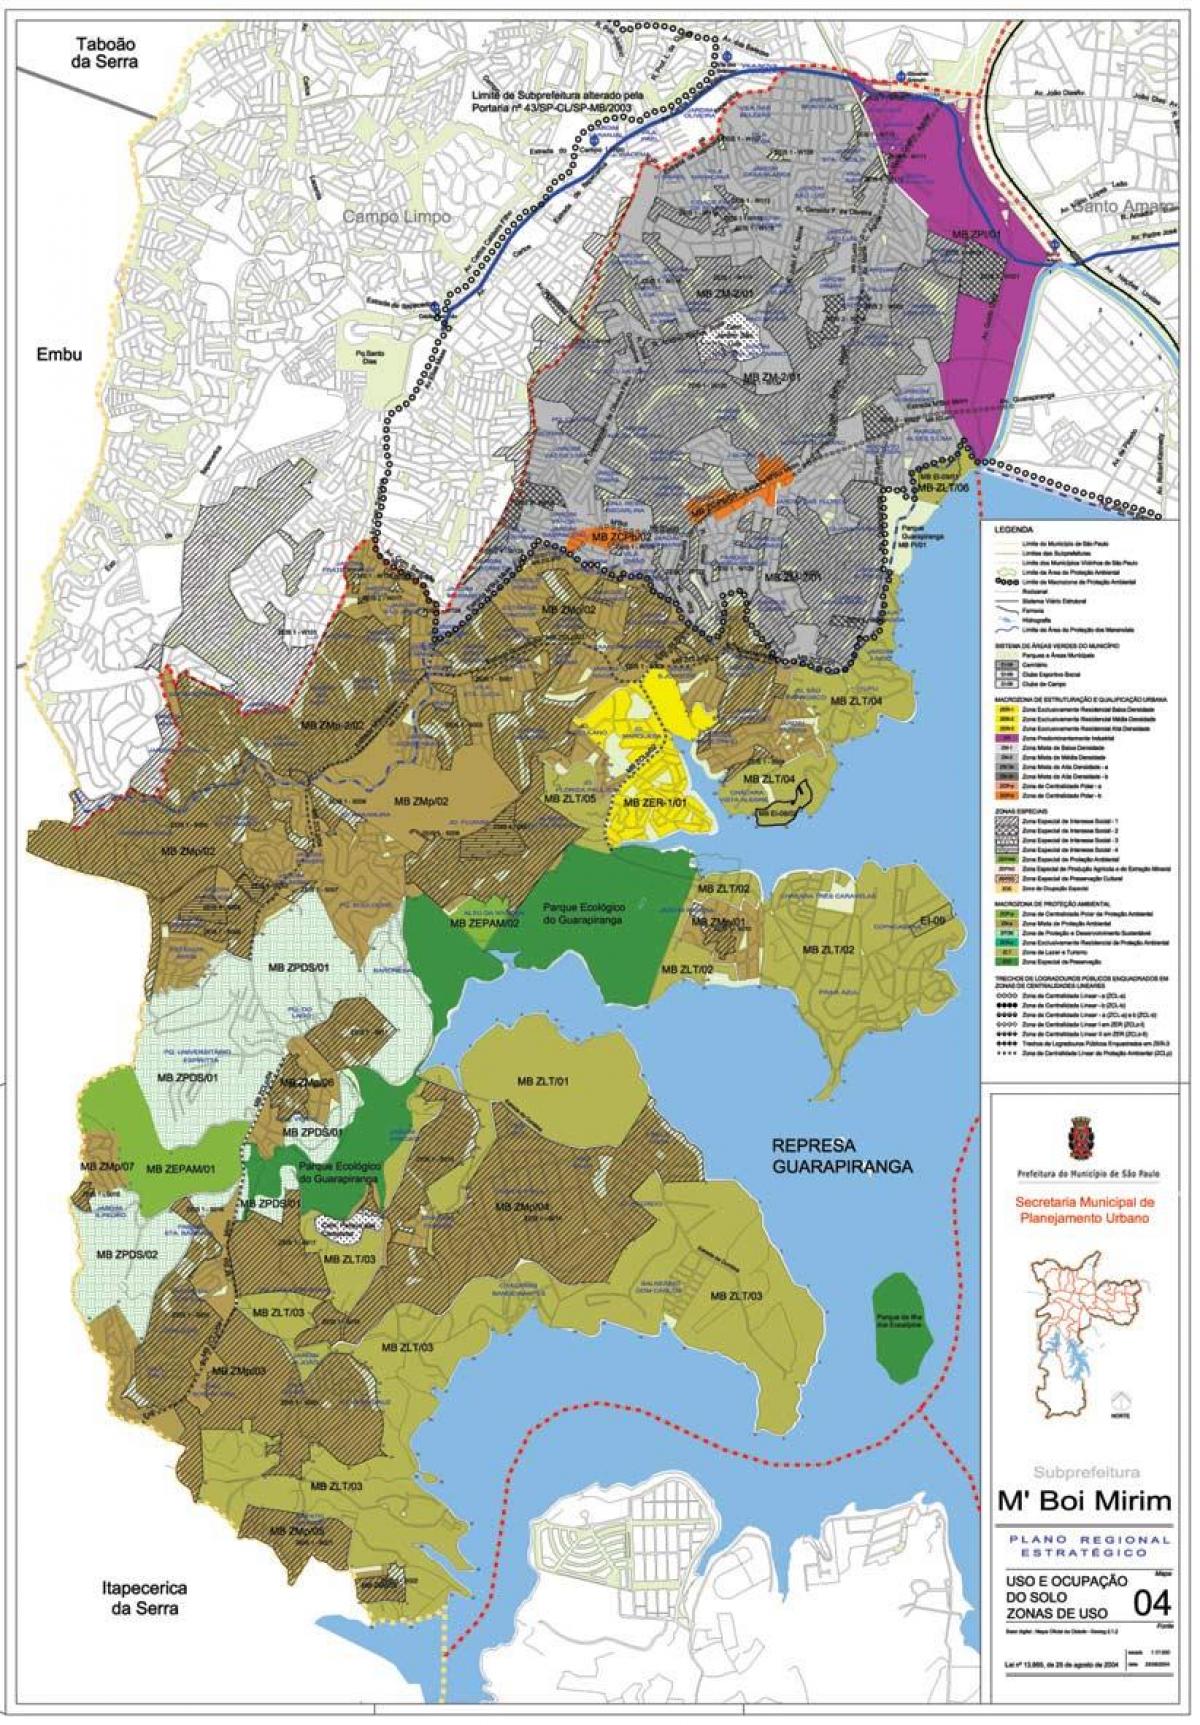 地図M'Boi Mirimサンパウロ-職業の土壌